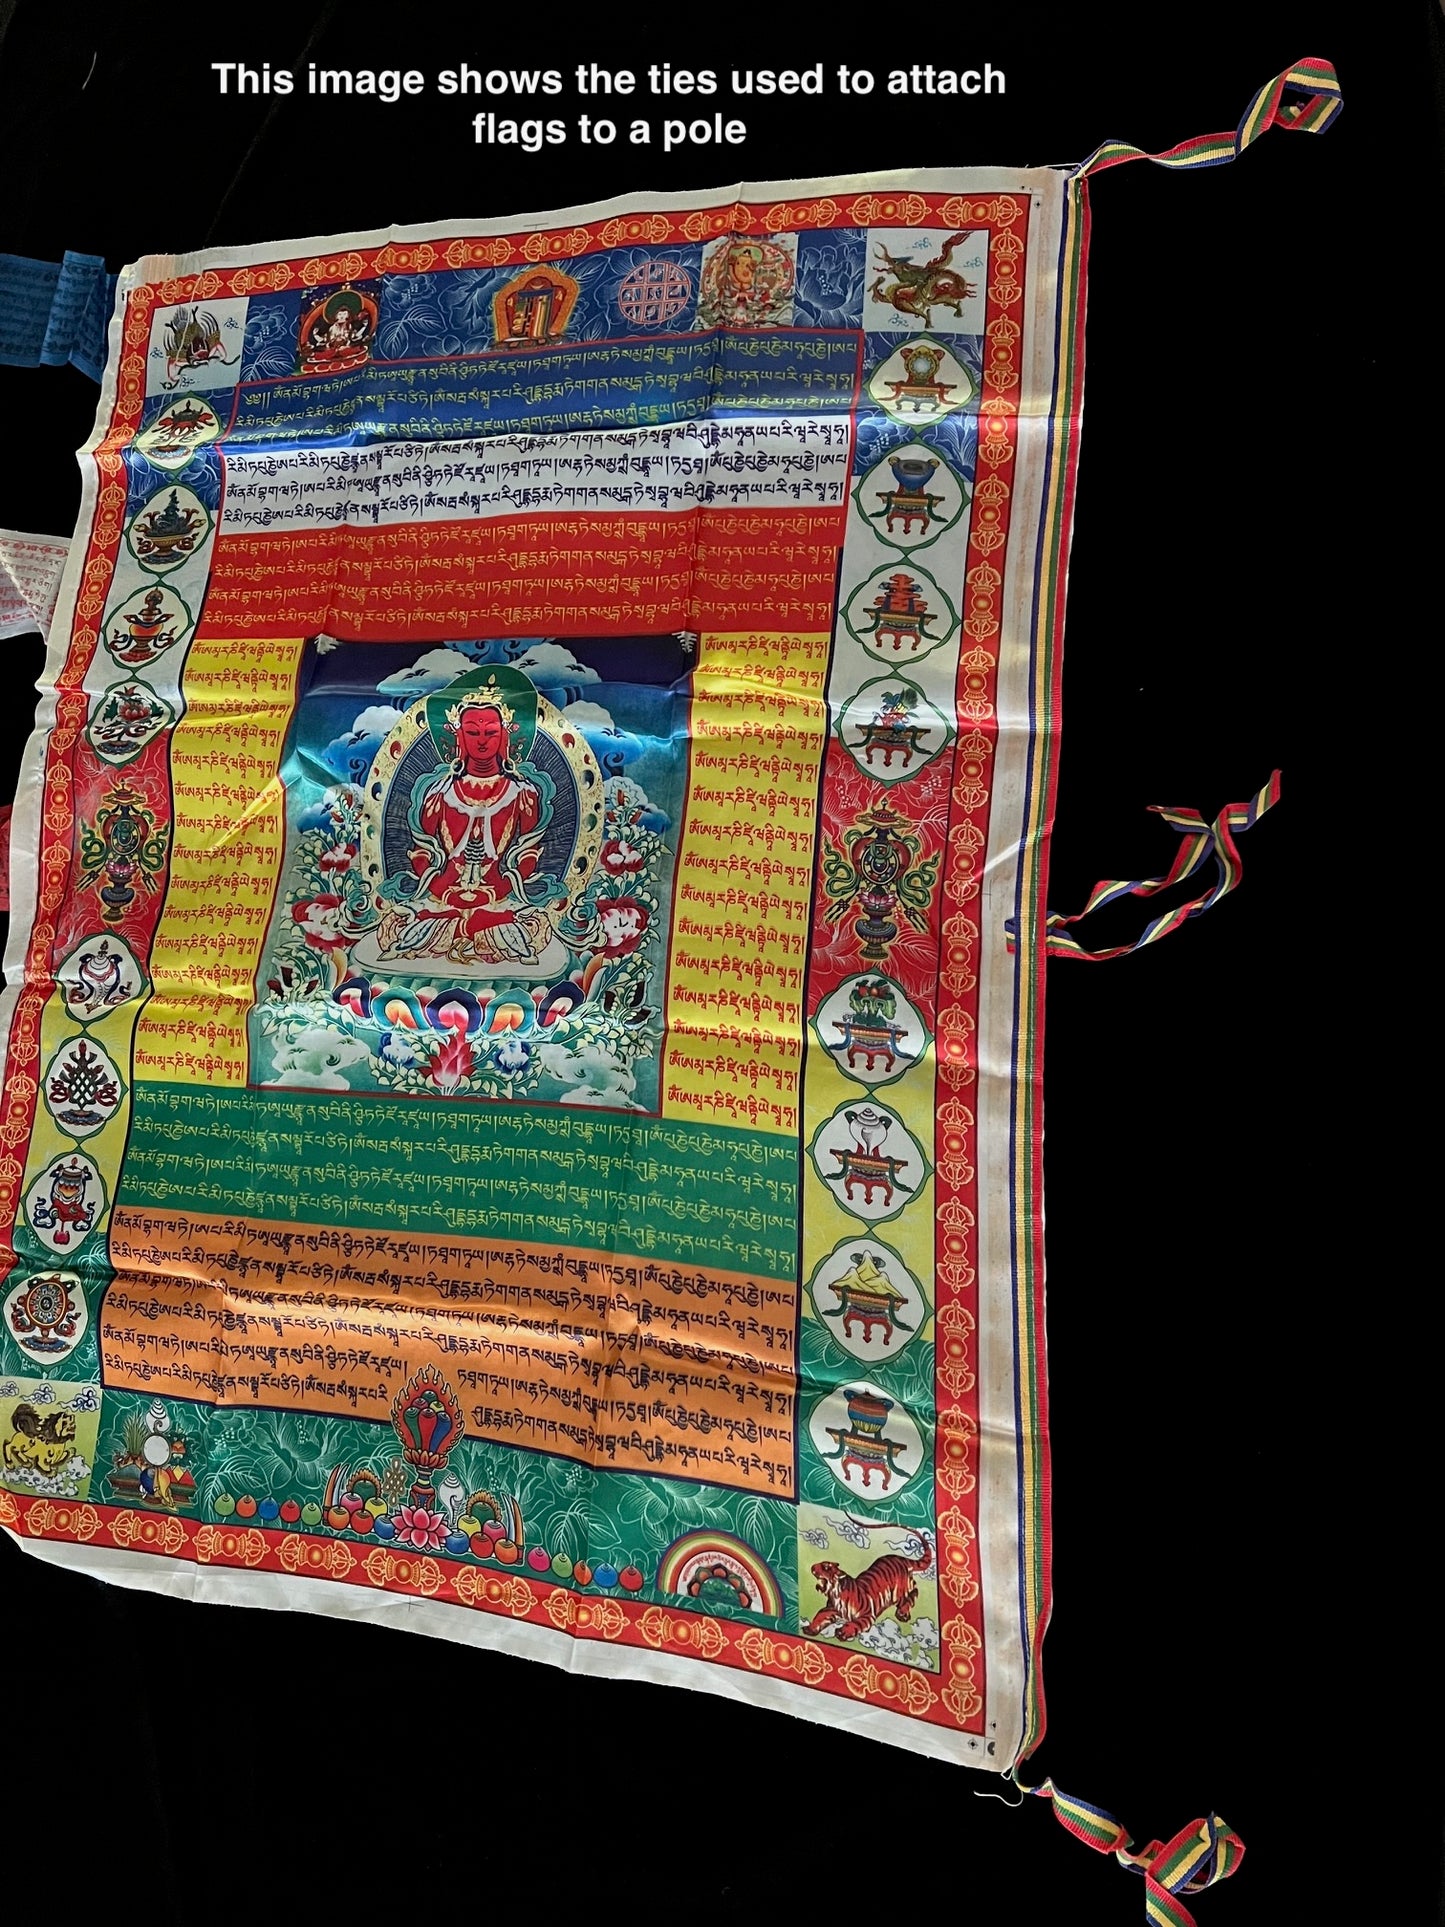 Énorme bannière de drapeau de prière Tara verte | Drapeaux de prière tibétains | 27 pouces x 36 pouces | 1 seul drapeau | Poly Soie | drapeau ou mur vertical